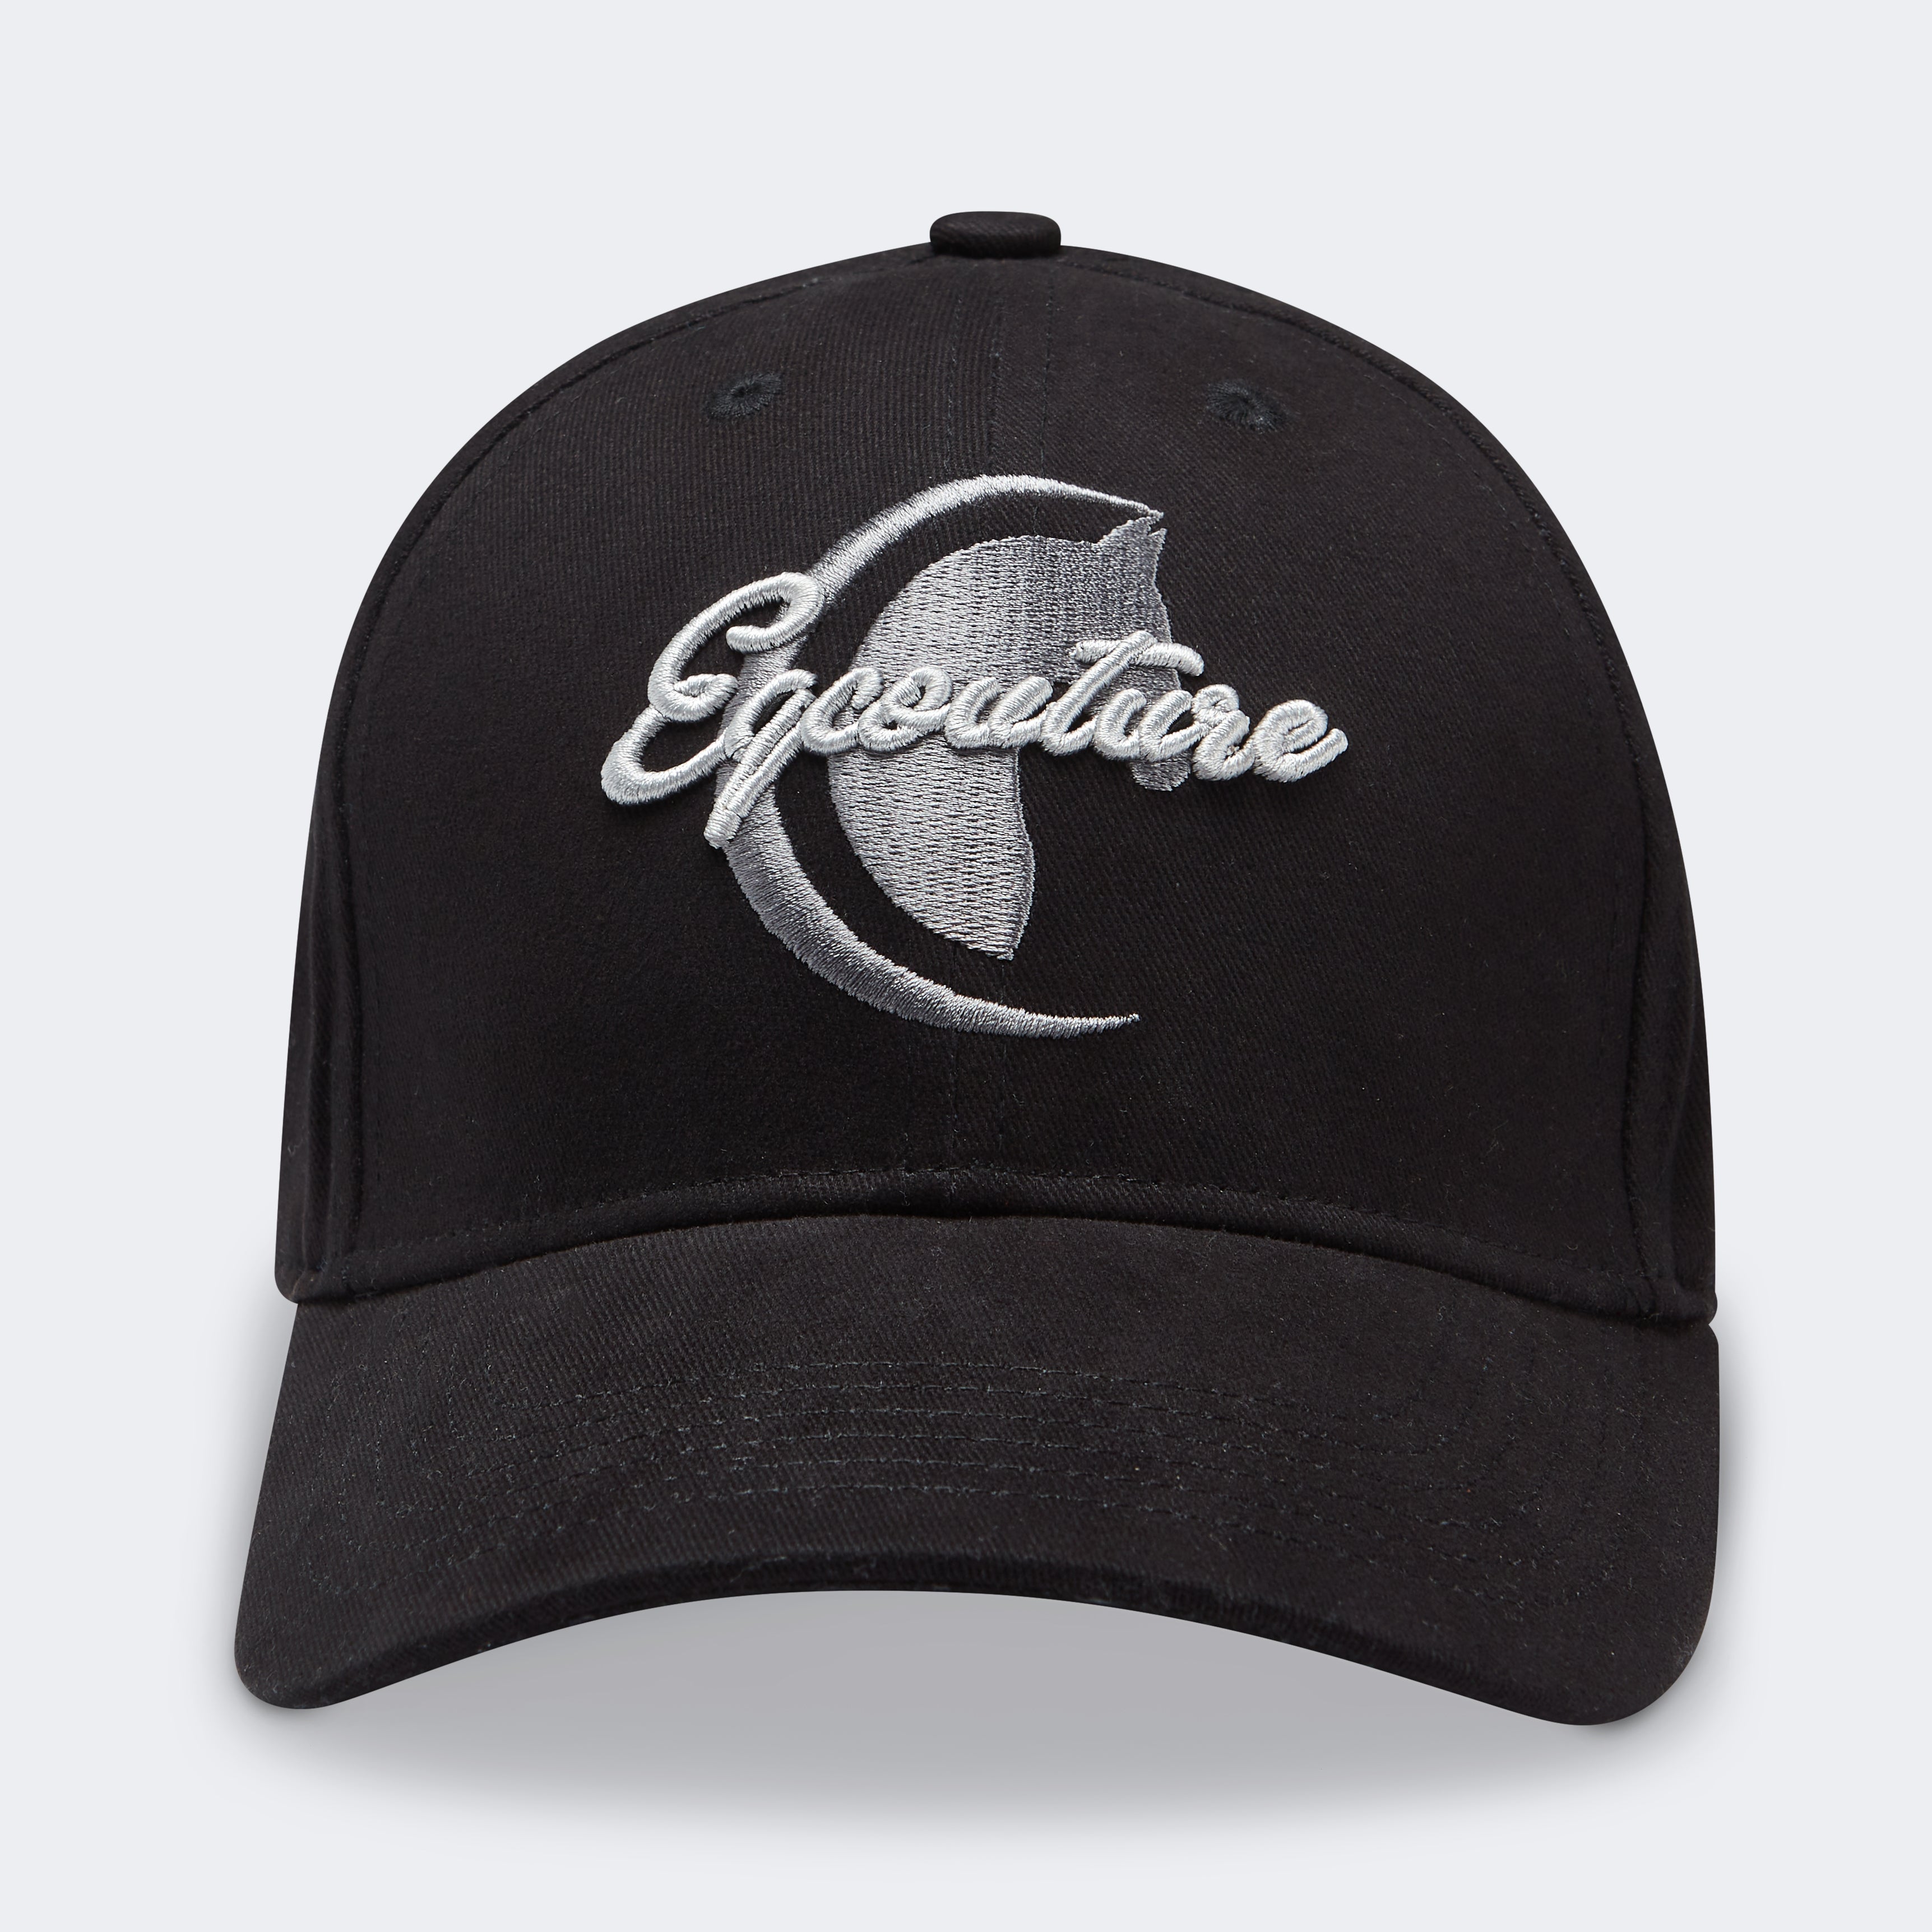 Exclusive Cap / Hat 'Esporte' - Black